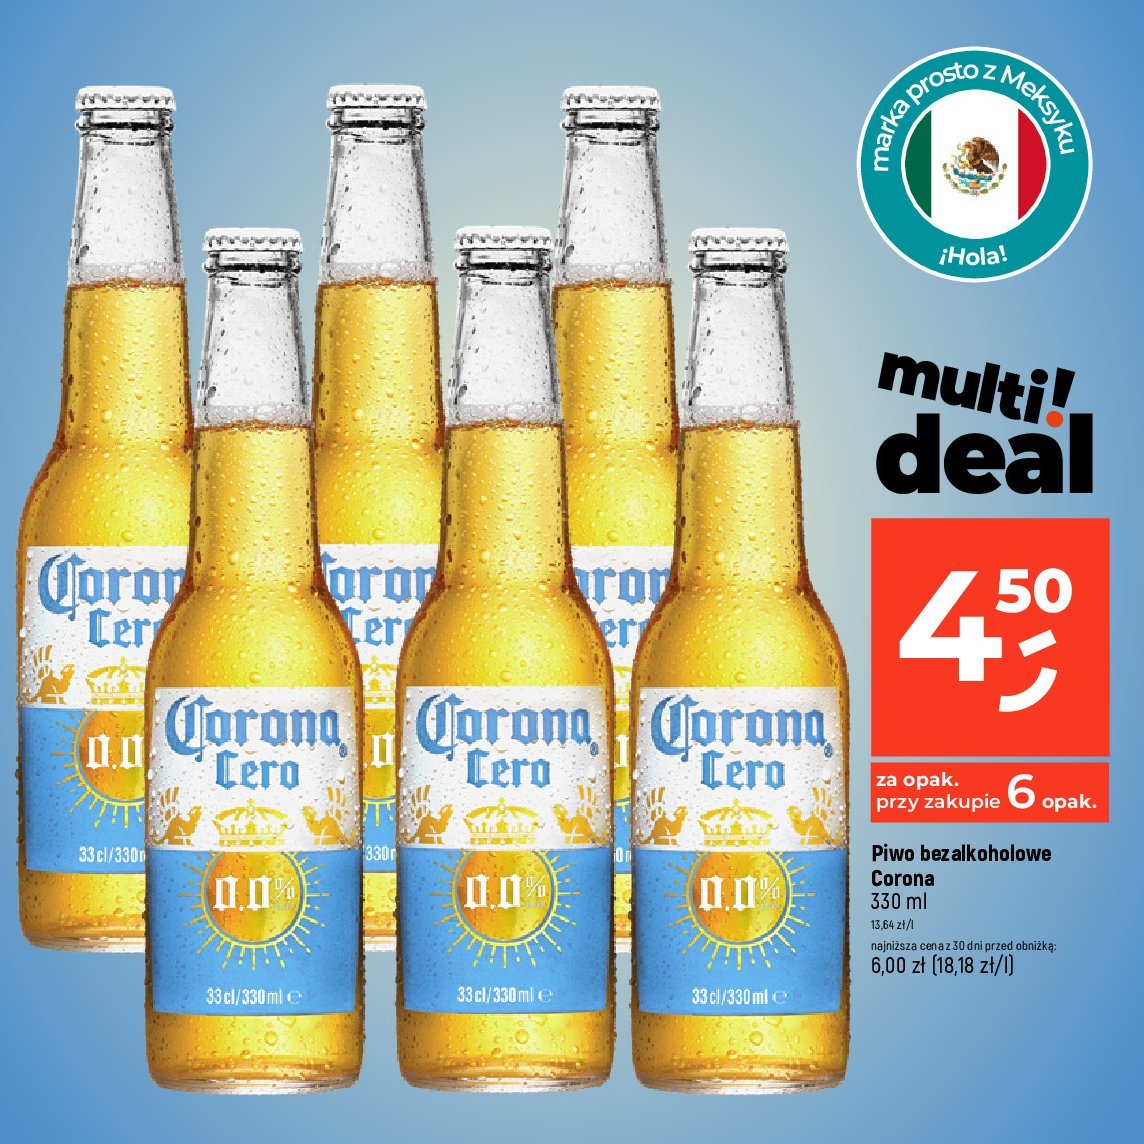 Piwo Corona extra 0.0% promocja w Dealz